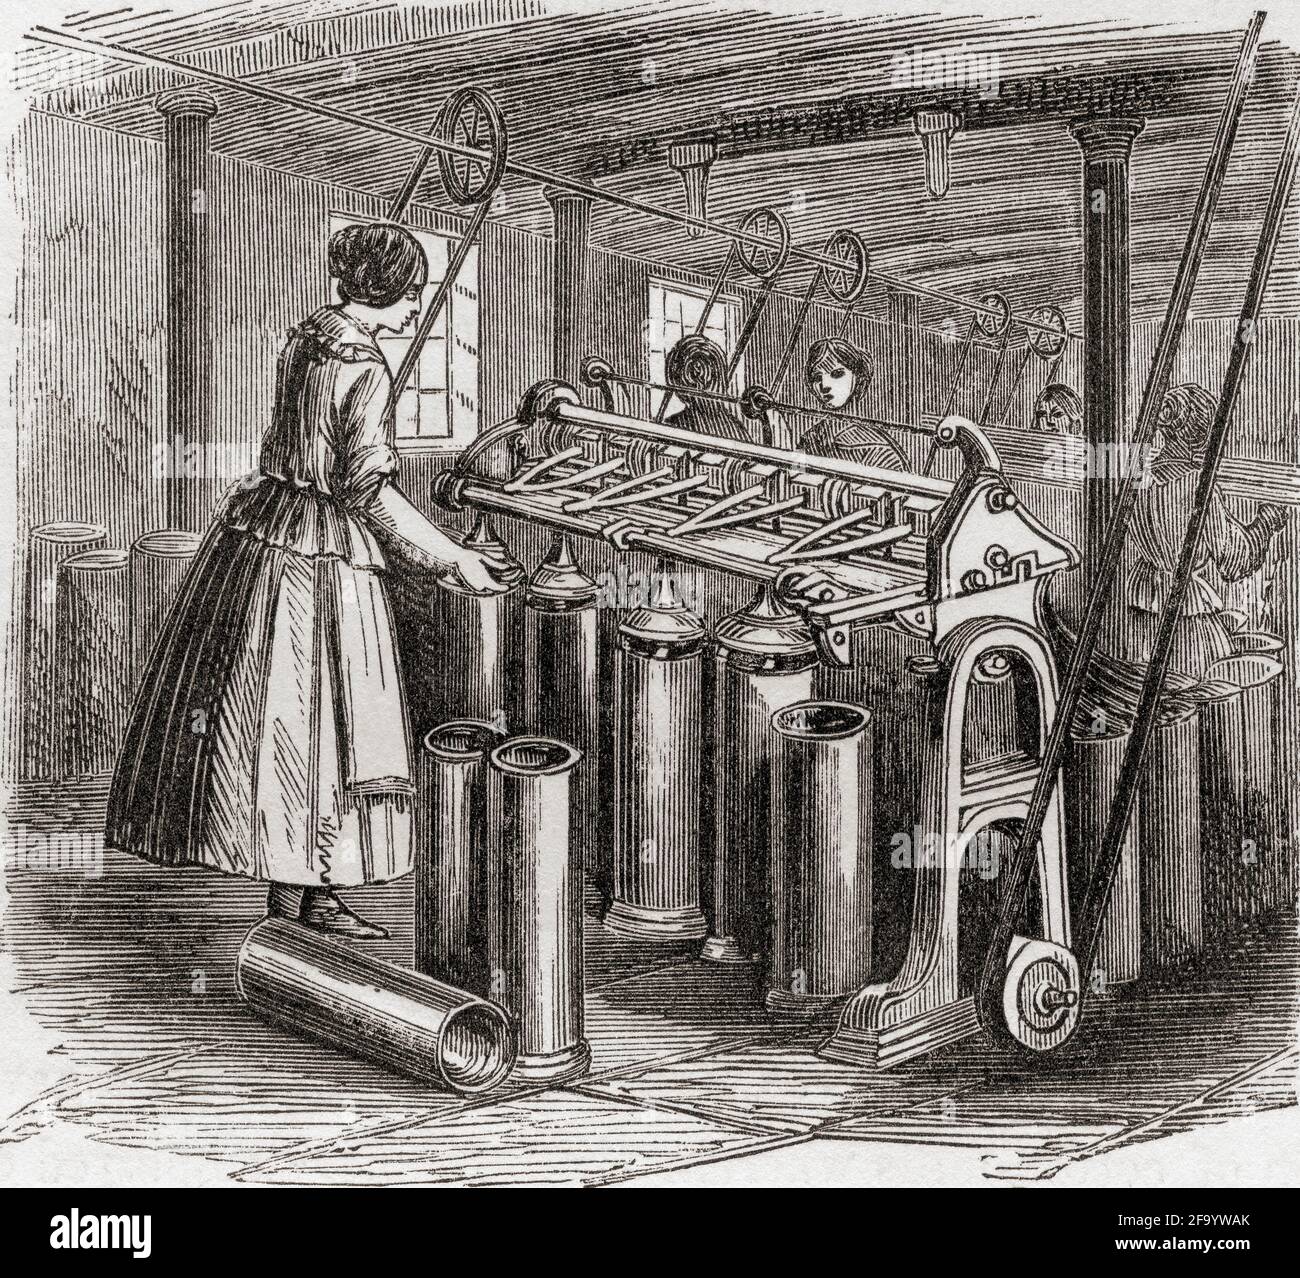 Der Zeichnungsrahmen oder Spinnrahmen, eine Maschine zum Zeichnen, Wickeln und Verdrehen von Garn, die durch das Ziehen von Baumwolle oder Wolle durch Paare von nacheinander schnelleren Walzen betrieben wird. Aus der Geschichte des Fortschritts in Großbritannien, veröffentlicht 1866. Stockfoto